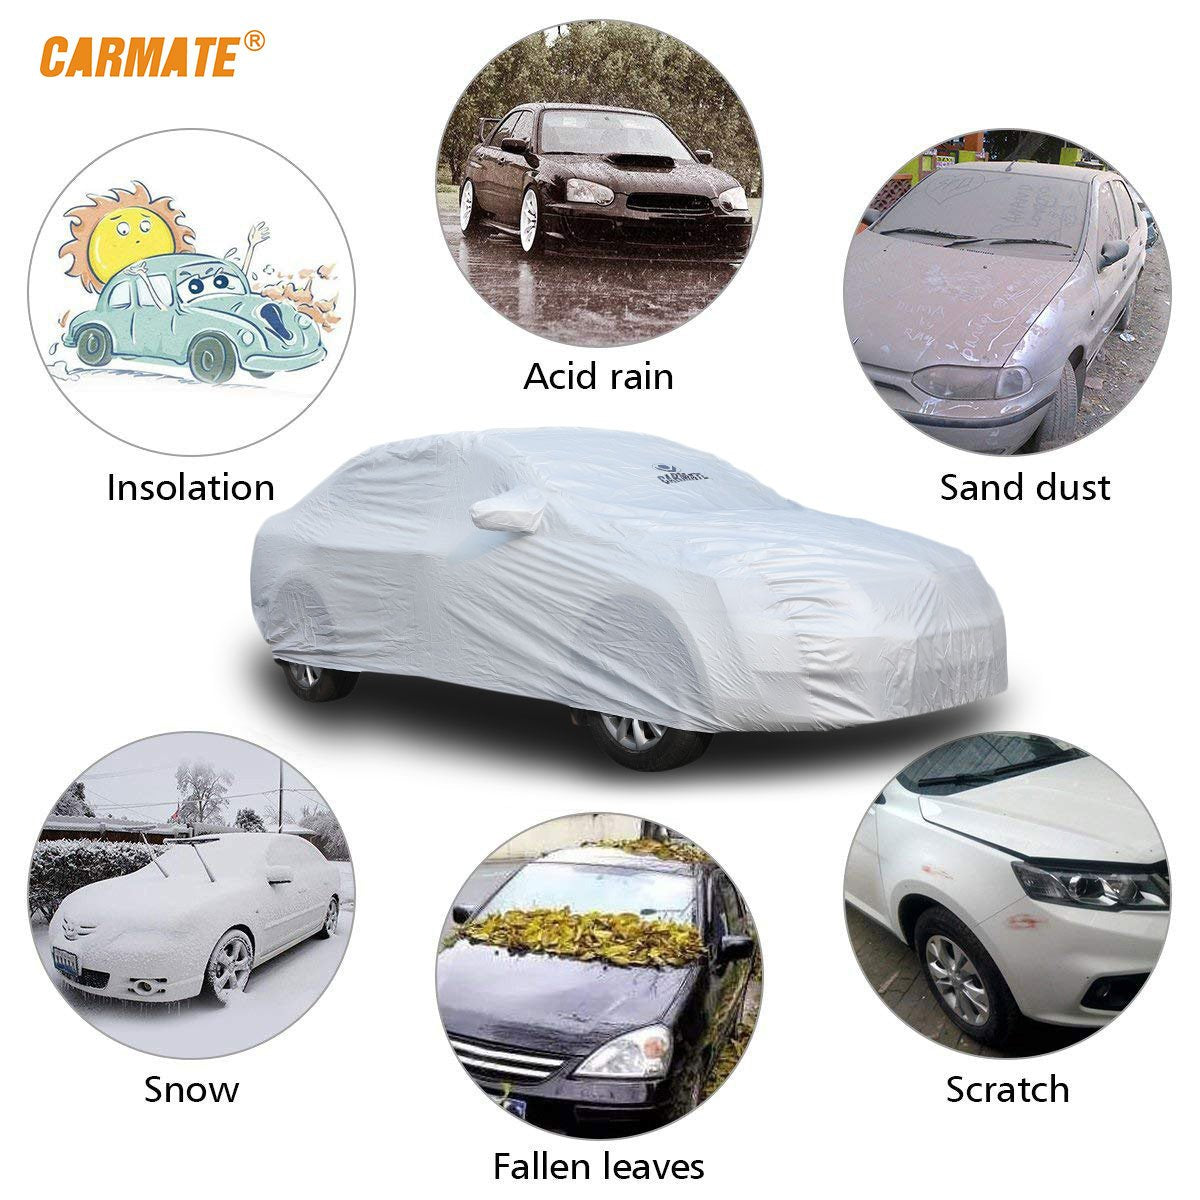 Carmate Premium Car Body Cover Silver Matty (Silver) for  Tata - Sumo Victa - CARMATE®